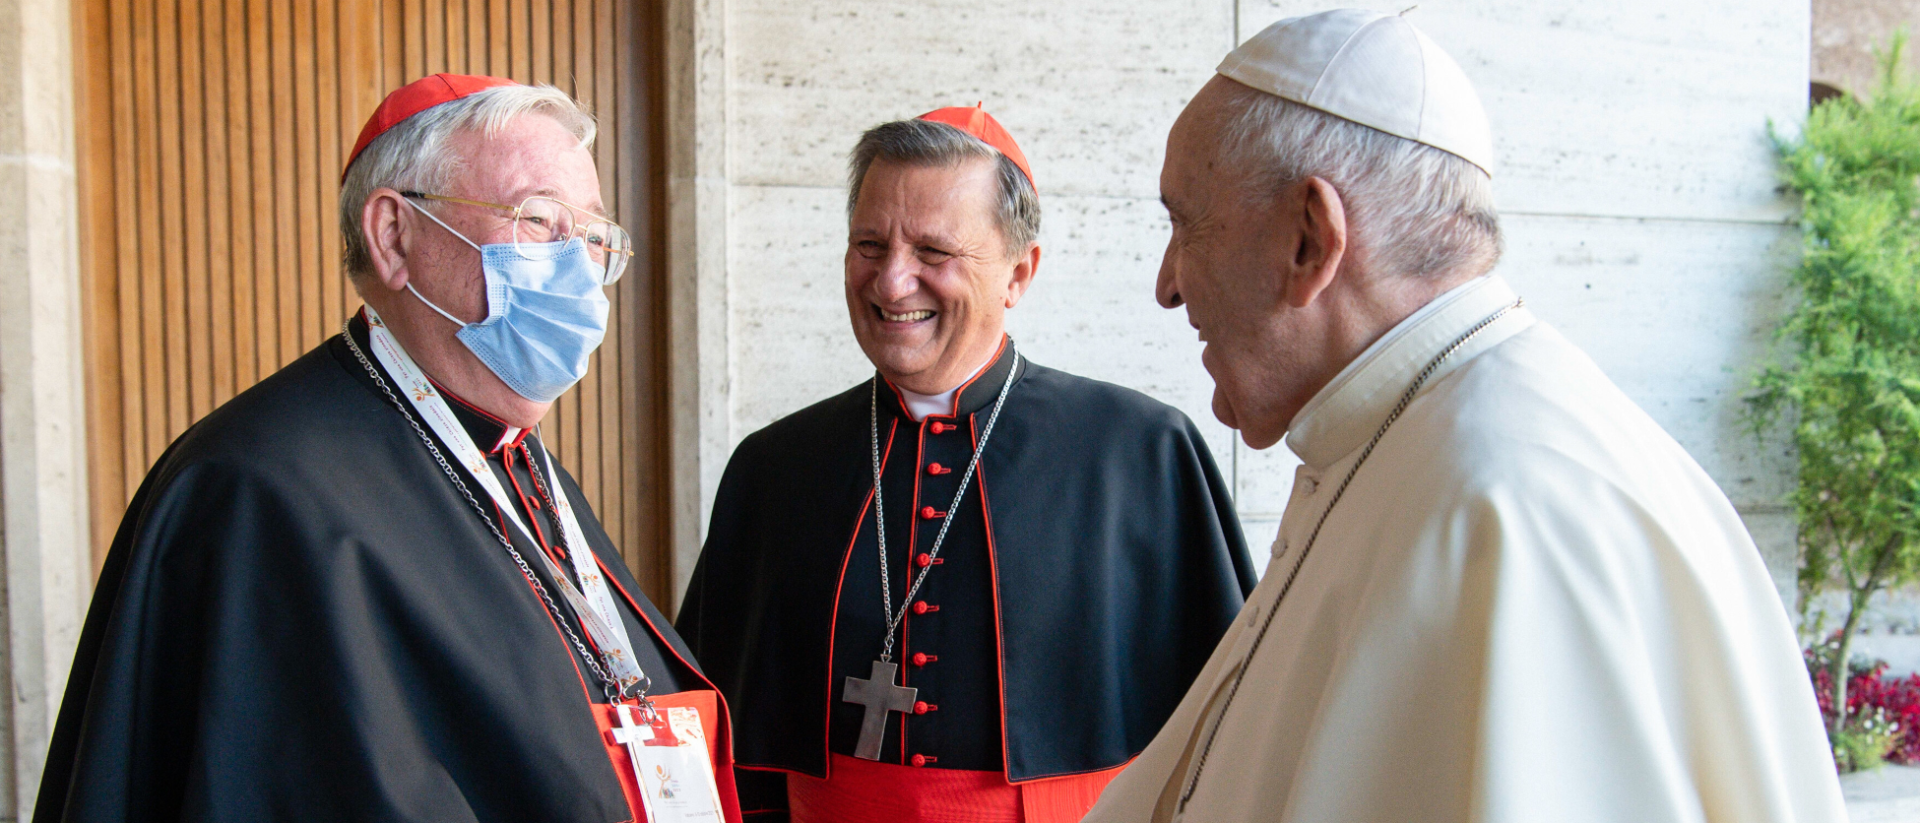 Jean-Claude Hollerich, Mario Grech und Papst Franziskus beim Start des synodalen Prozesses im Oktober 2021 in Rom.